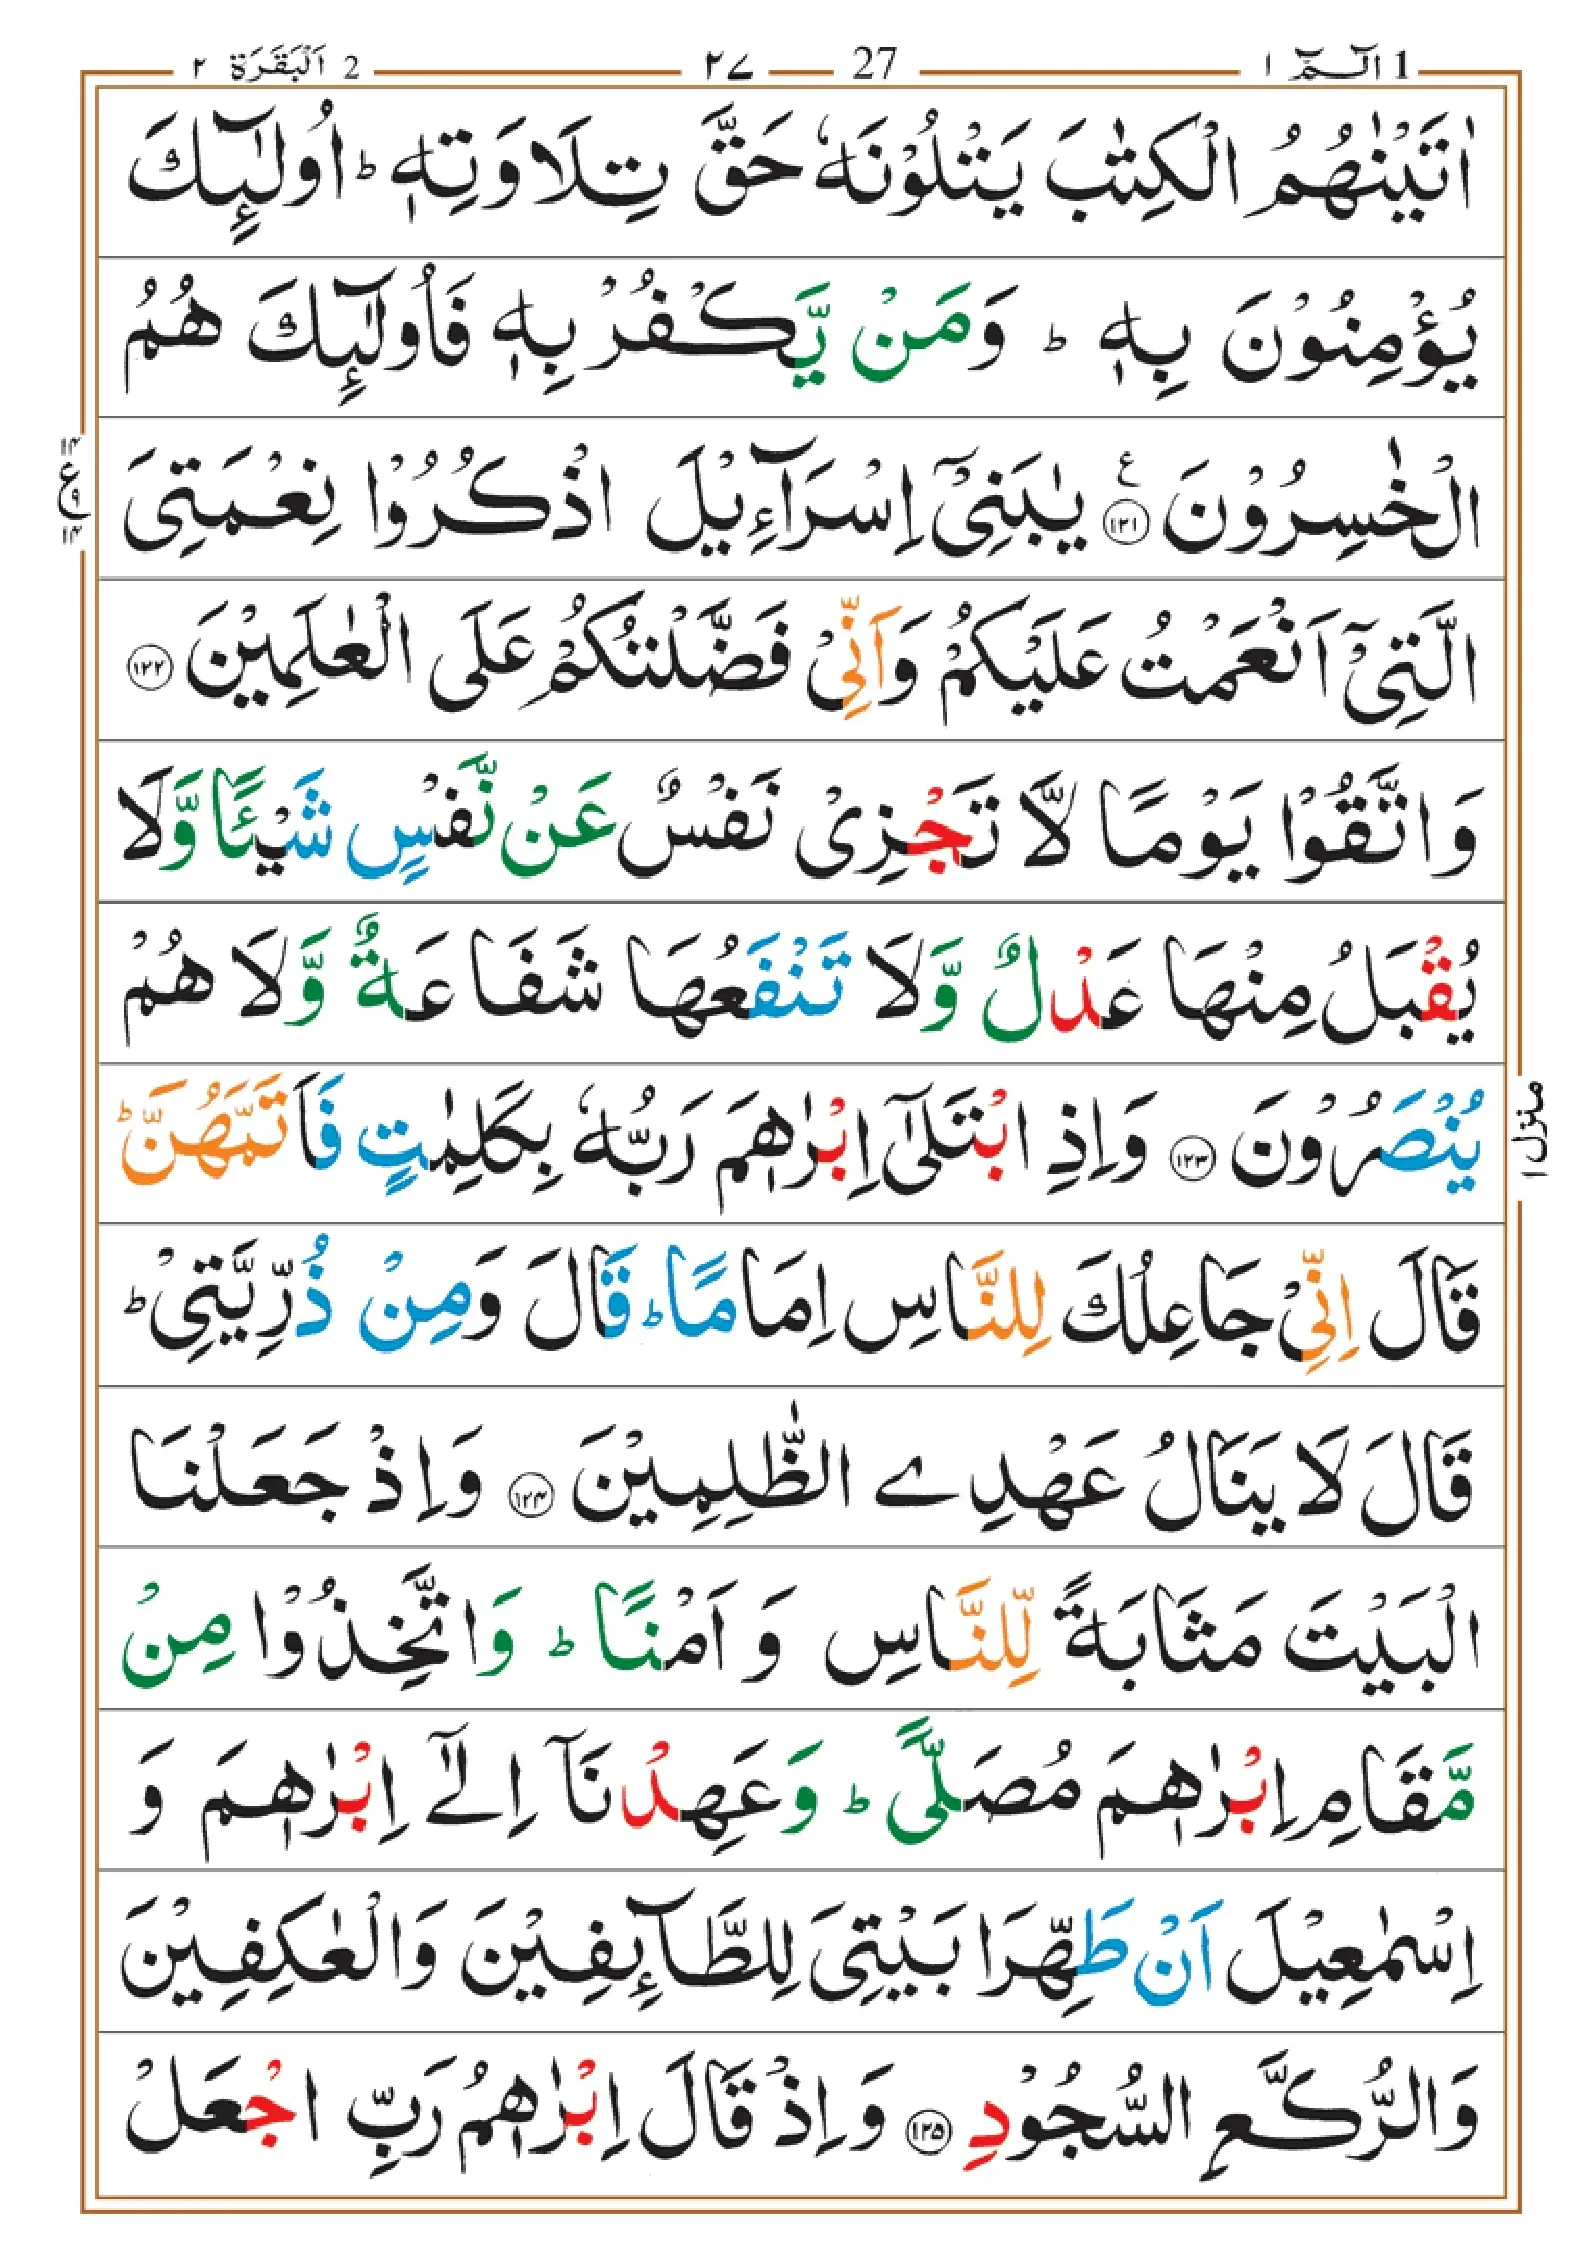 quran-para-1(1)_page-0027